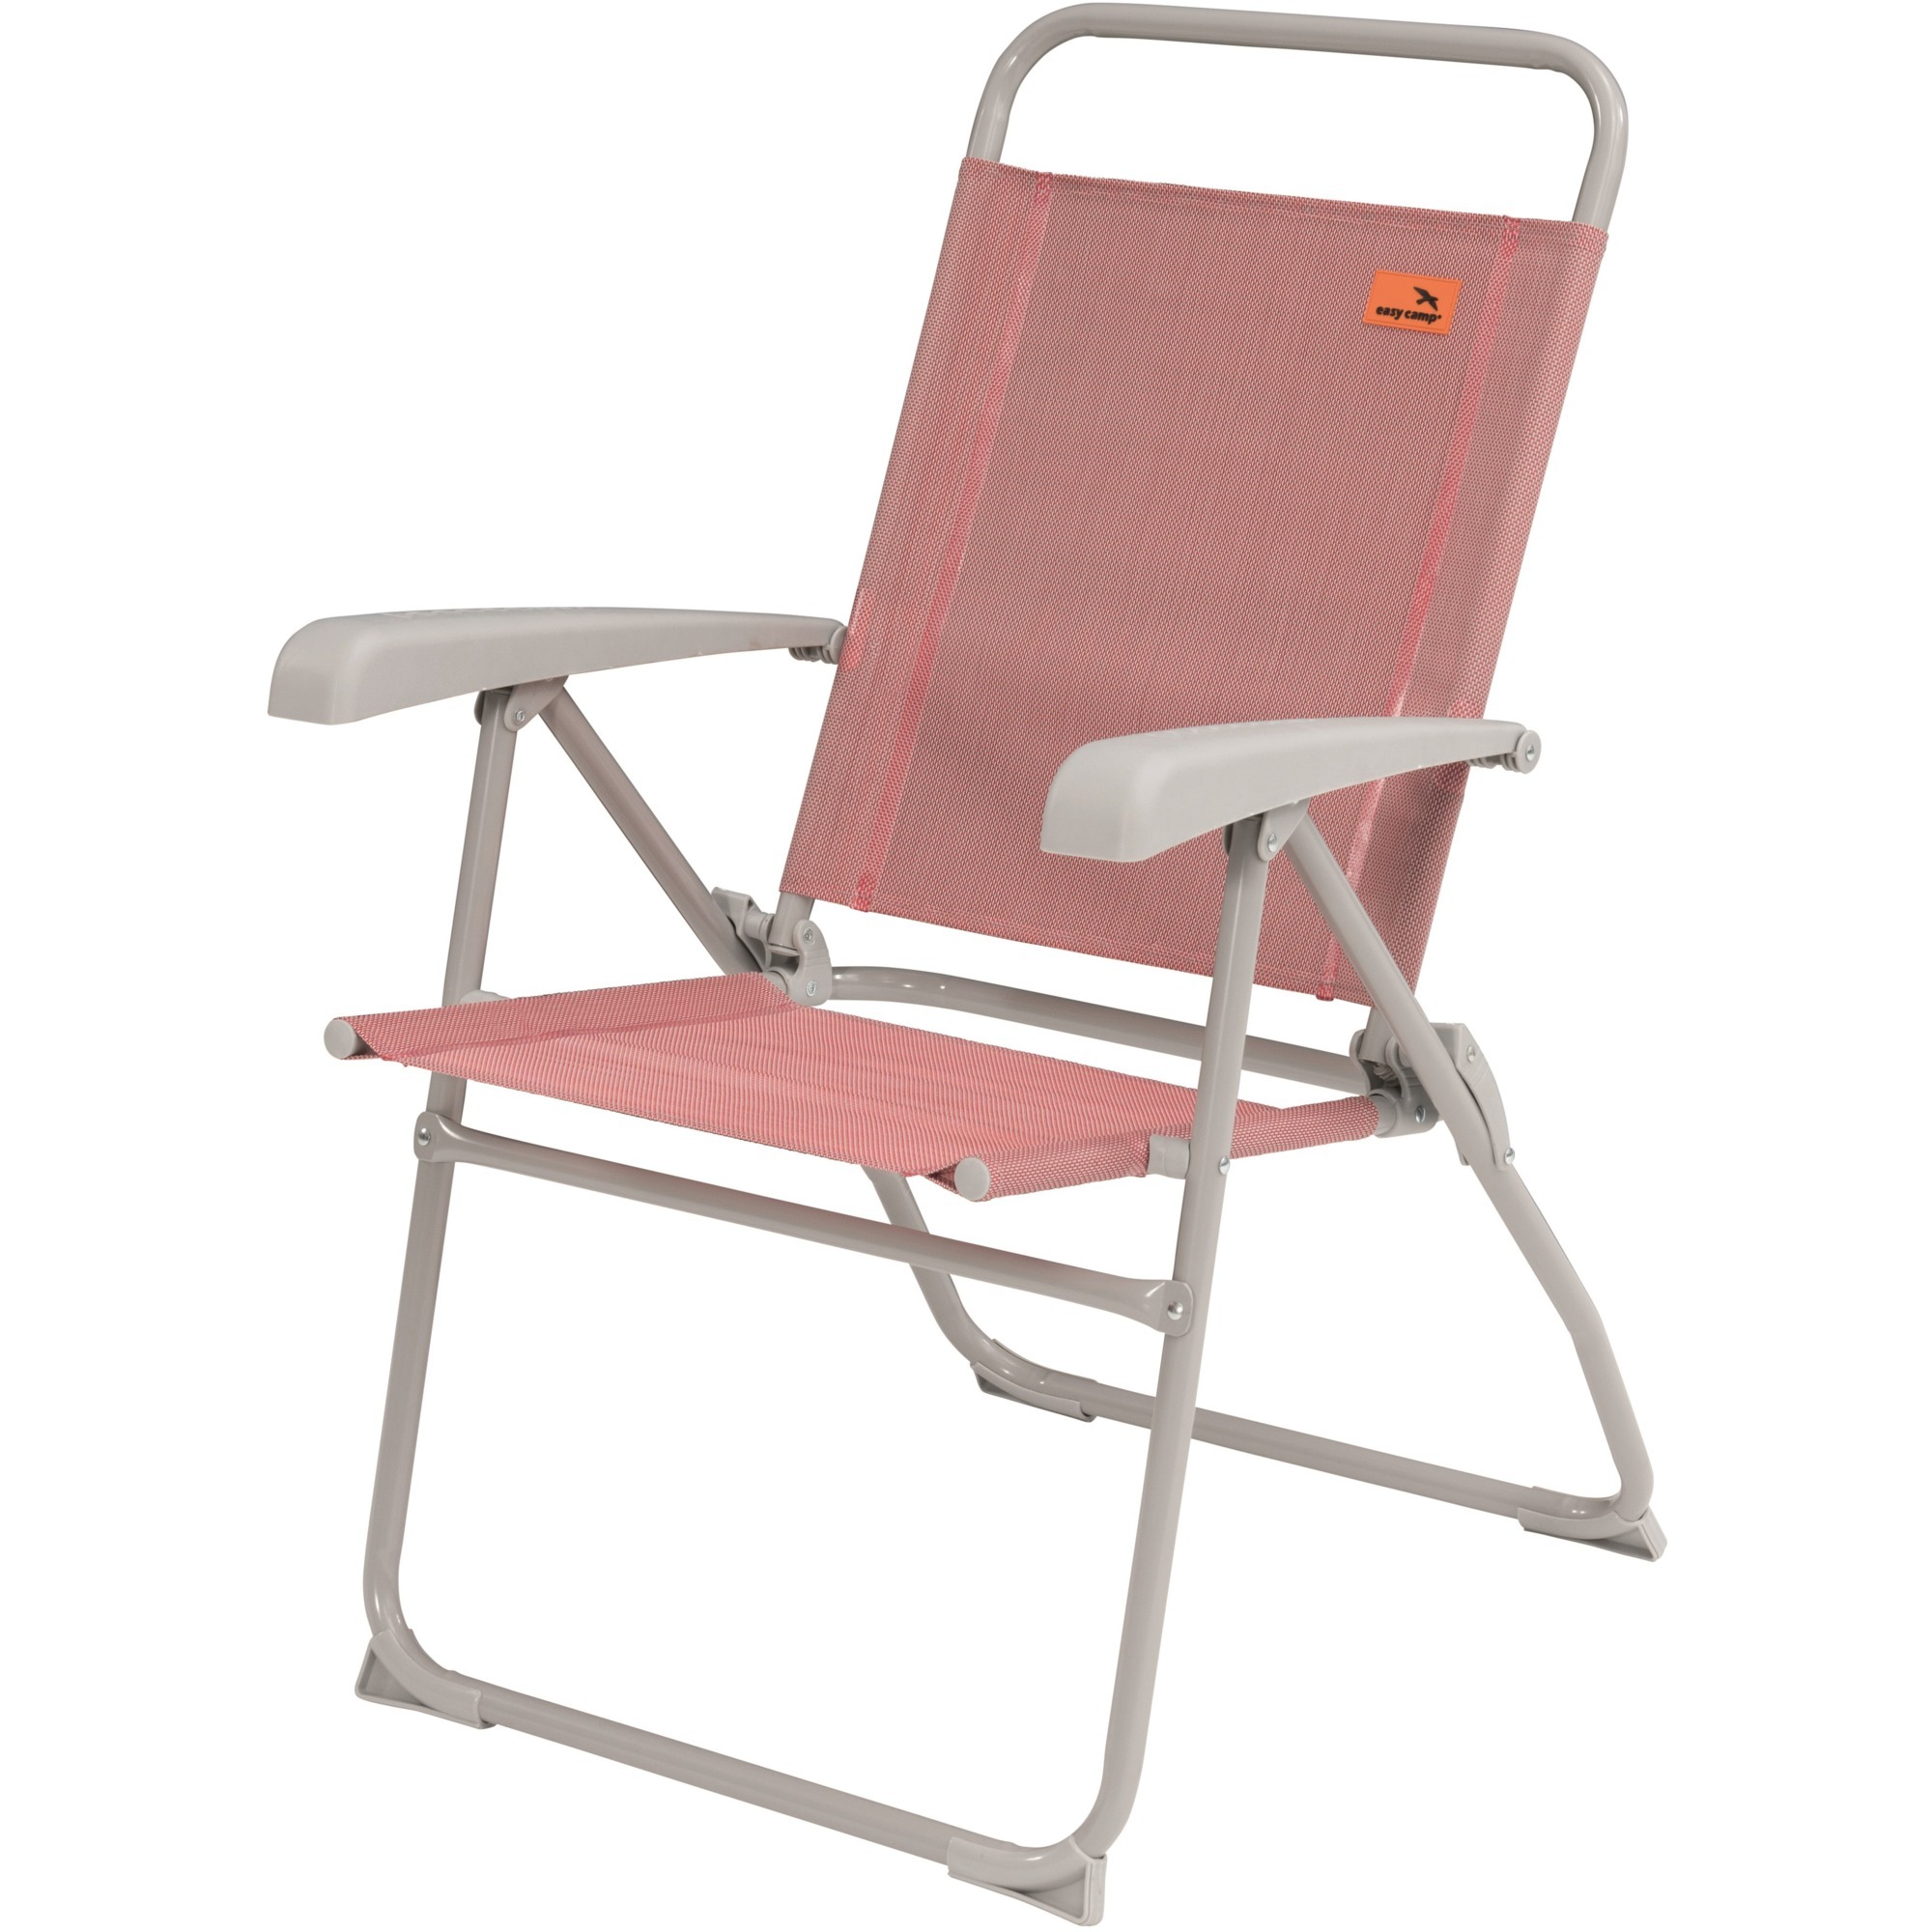 Image of Alternate - Spica Coral Red 420056, Camping-Stuhl online einkaufen bei Alternate